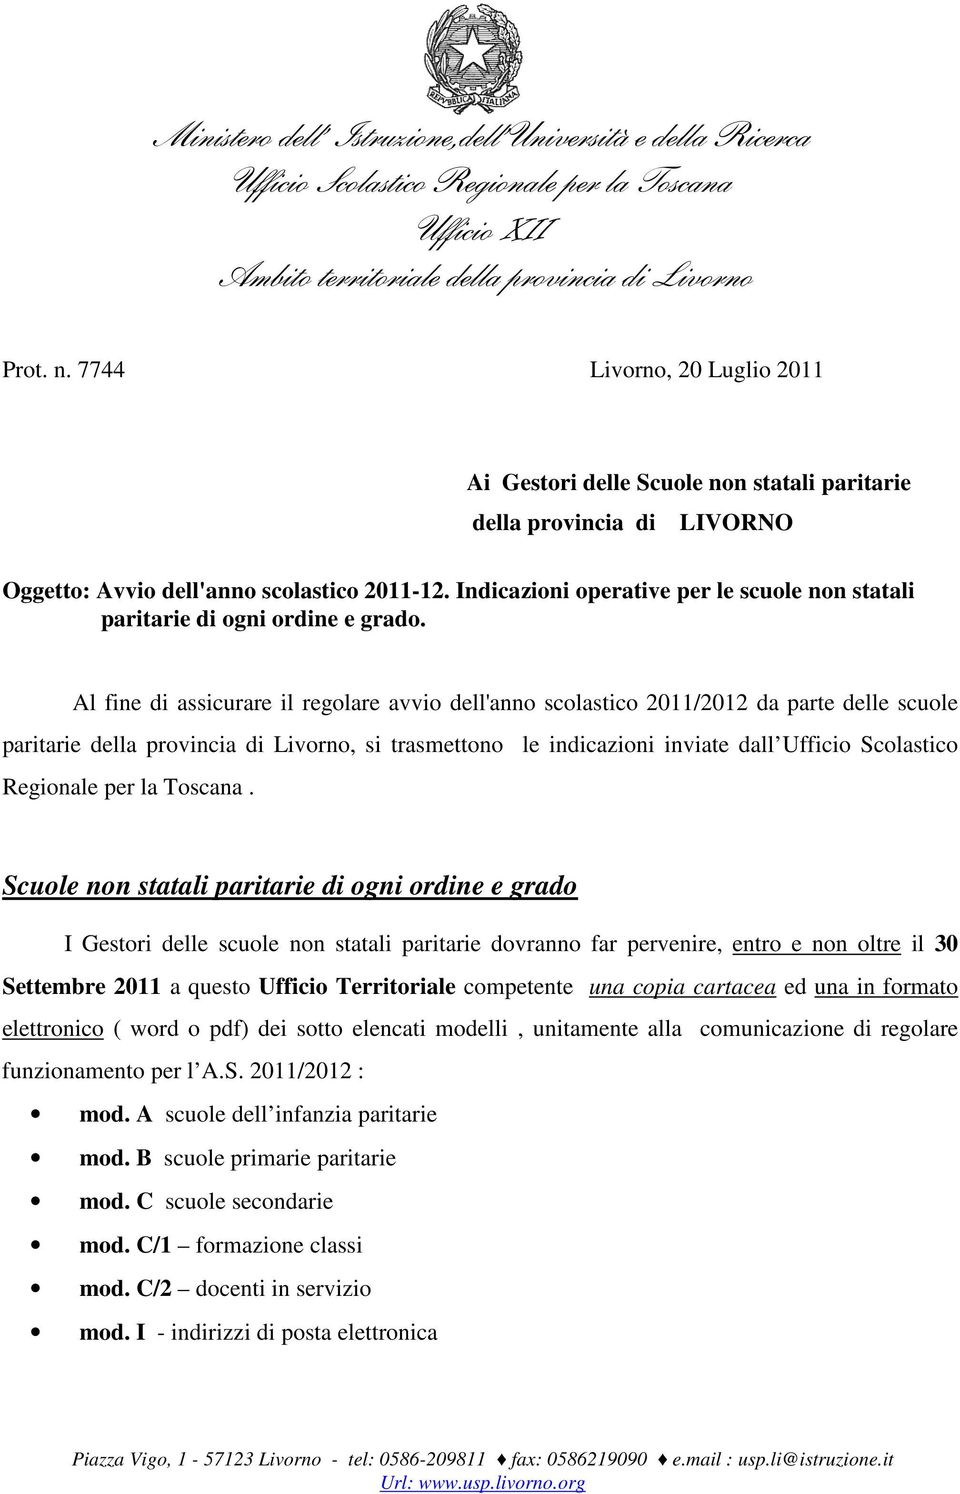 Al fine di assicurare il regolare avvio dell'anno scolastico 2011/2012 da parte delle scuole paritarie della provincia di Livorno, si trasmettono le indicazioni inviate dall Ufficio Scolastico